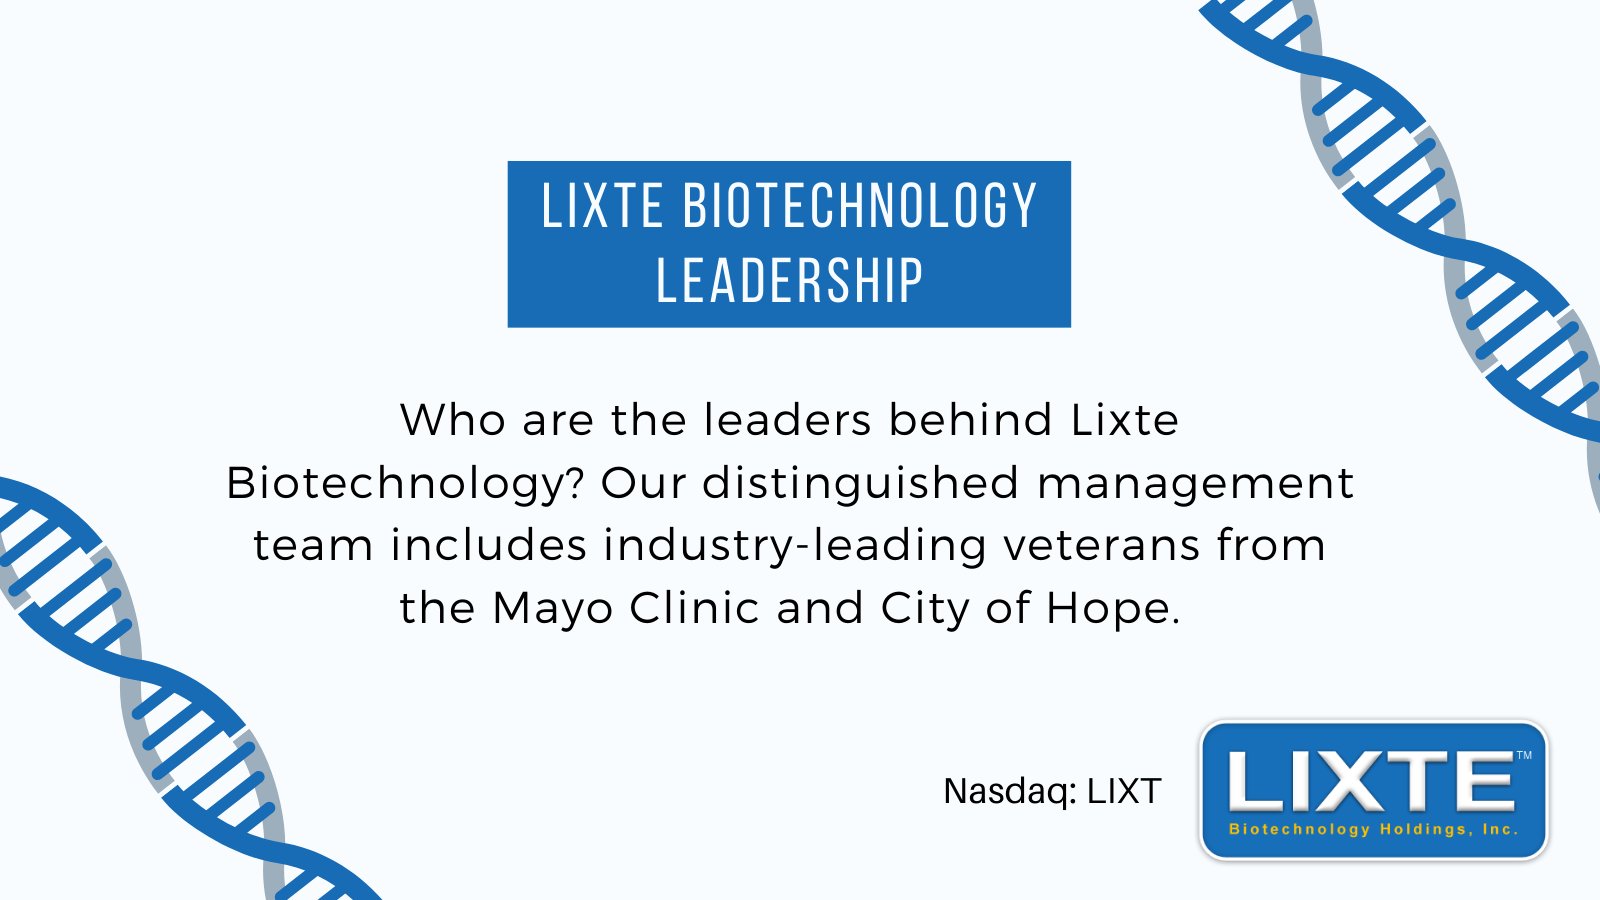 Lixte Biotechnology (LixteBiotech) / Twitter